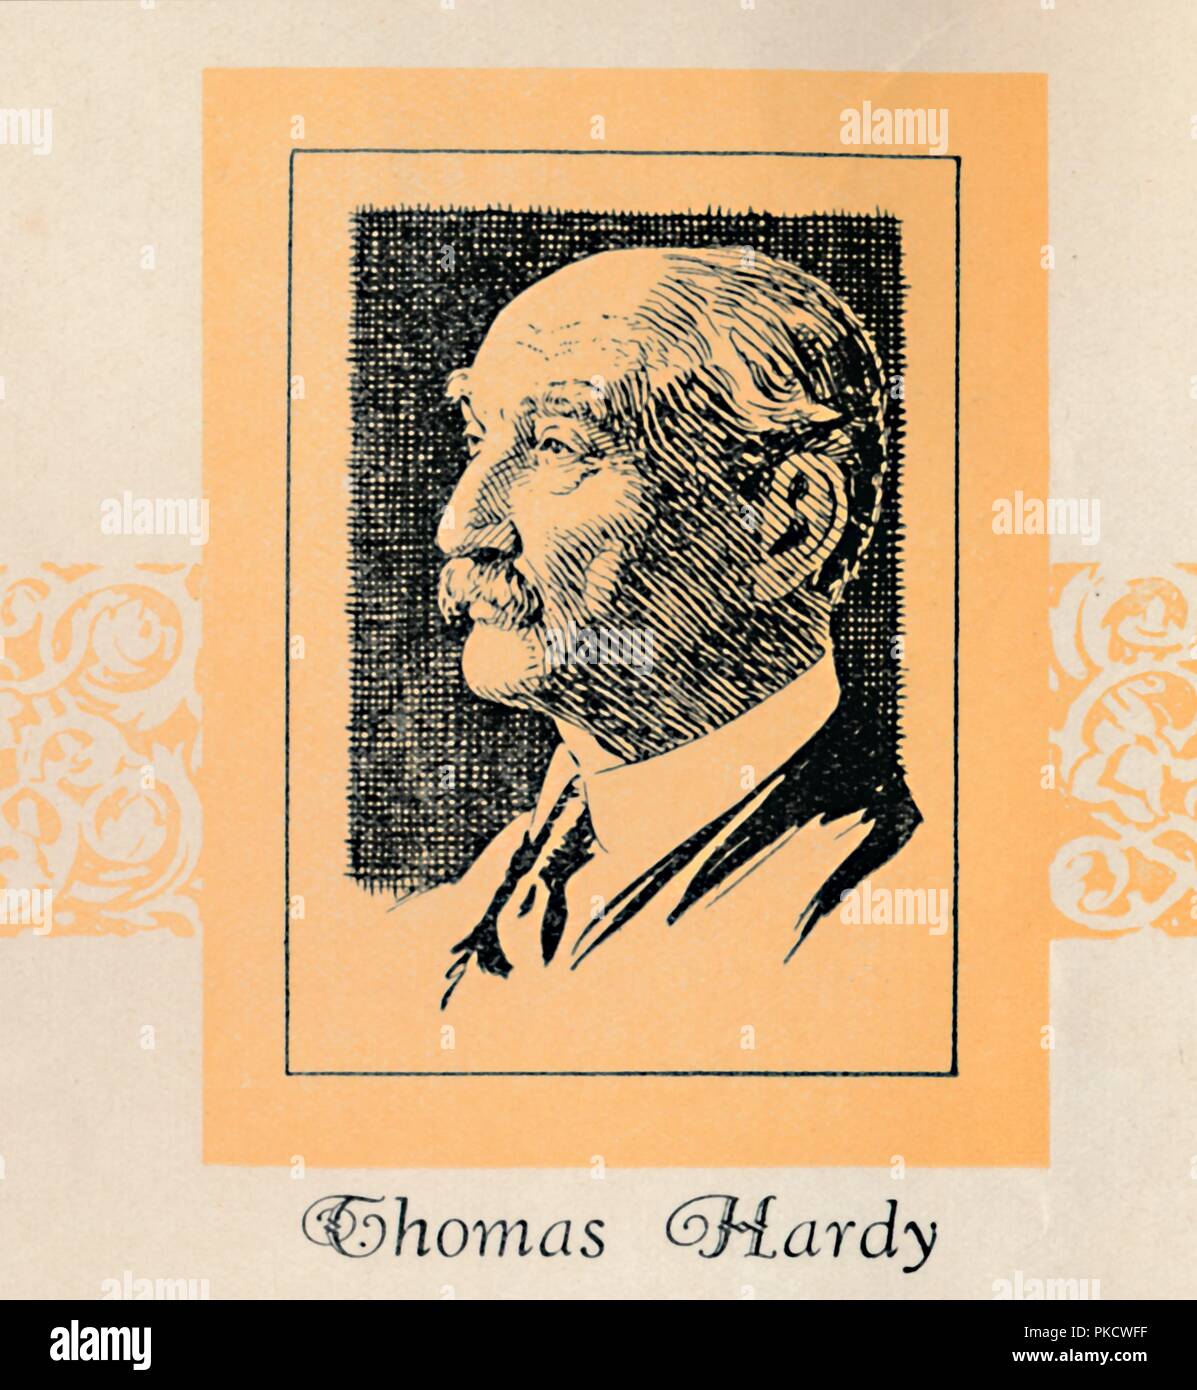 'Thomas Hardy', (1929). Artist: Unknown. Stock Photo